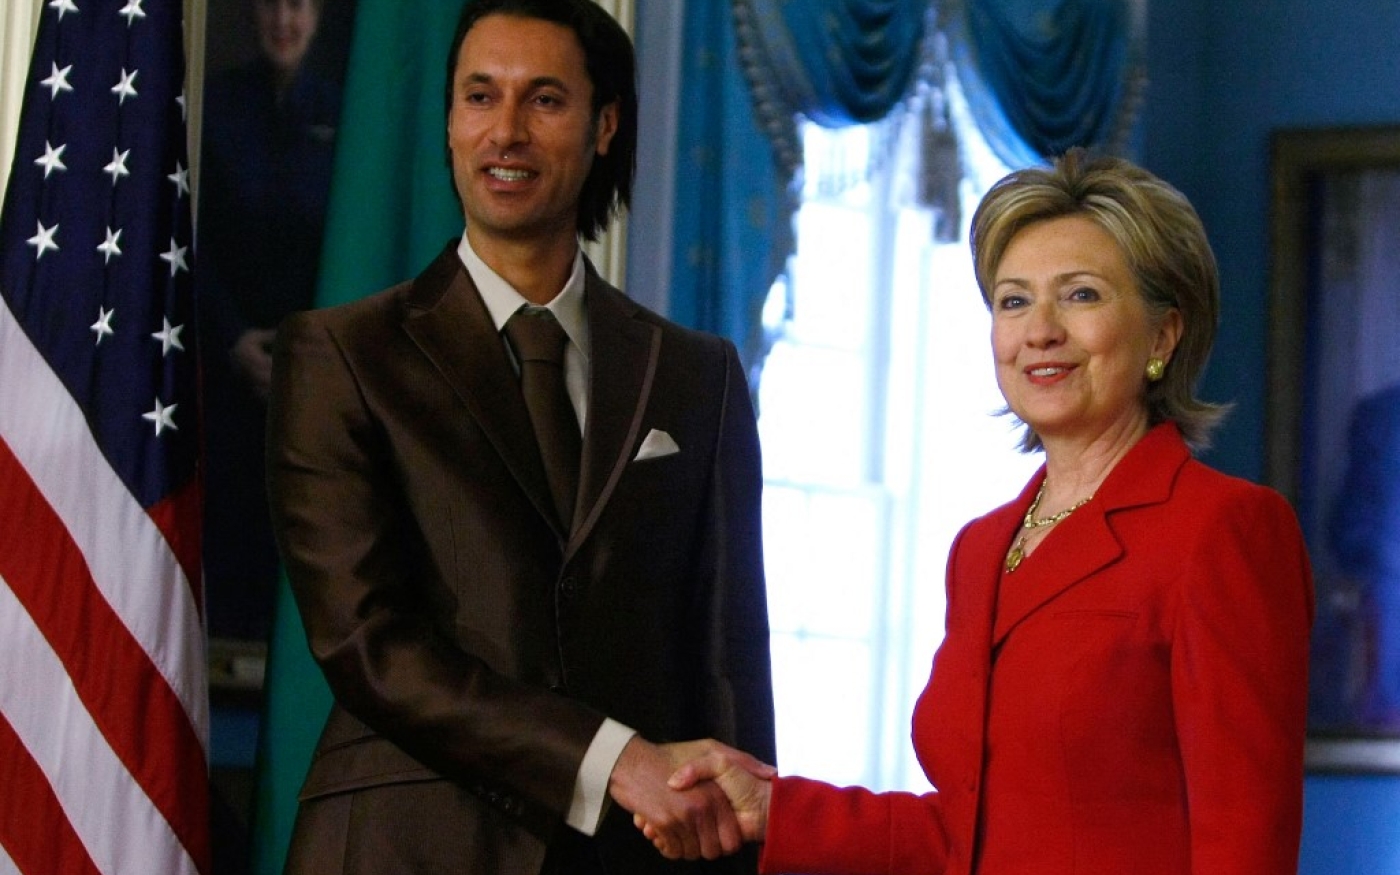 La secrétaire d’État américaine Hillary Clinton serre la main du conseiller à la sécurité nationale libyen Moatassem Kadhafi, le 21 avril 2009 à Washington (AFP)